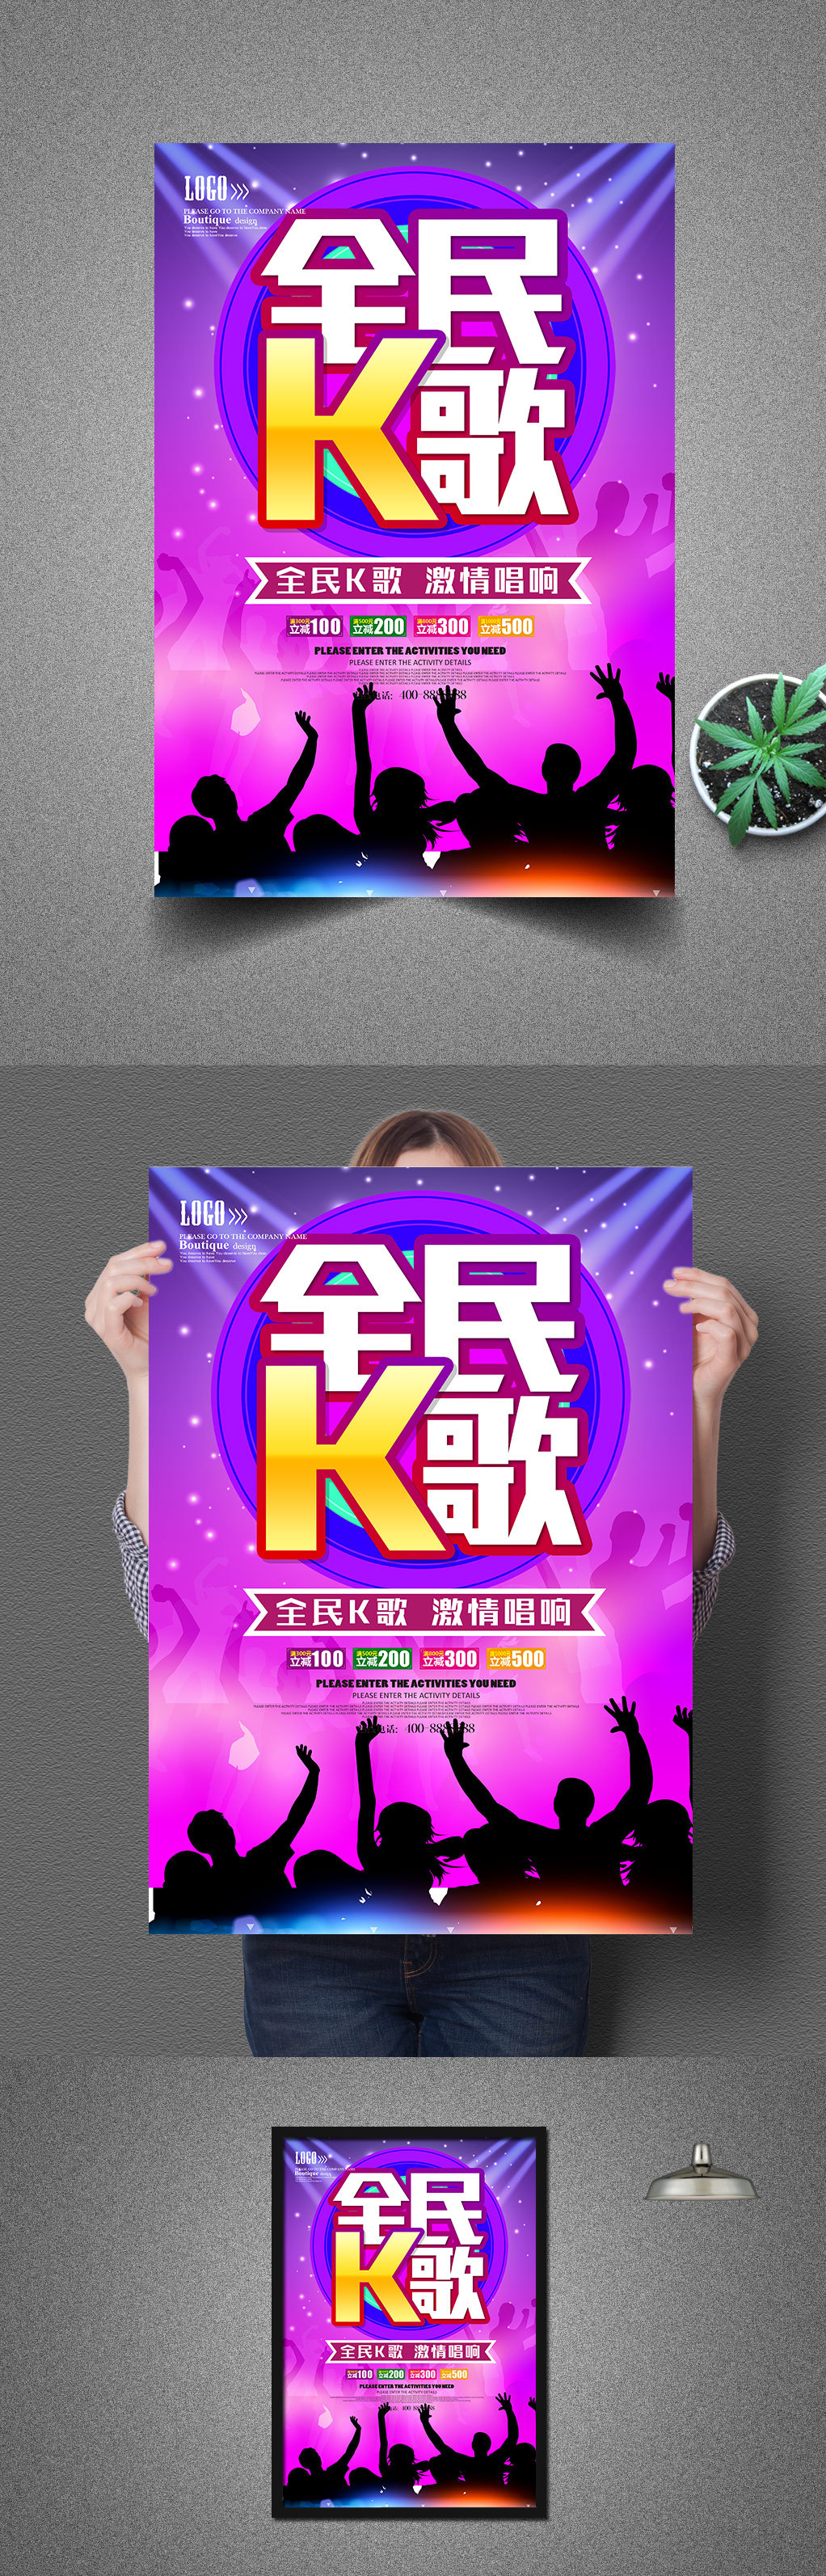 全民K歌KTV海报